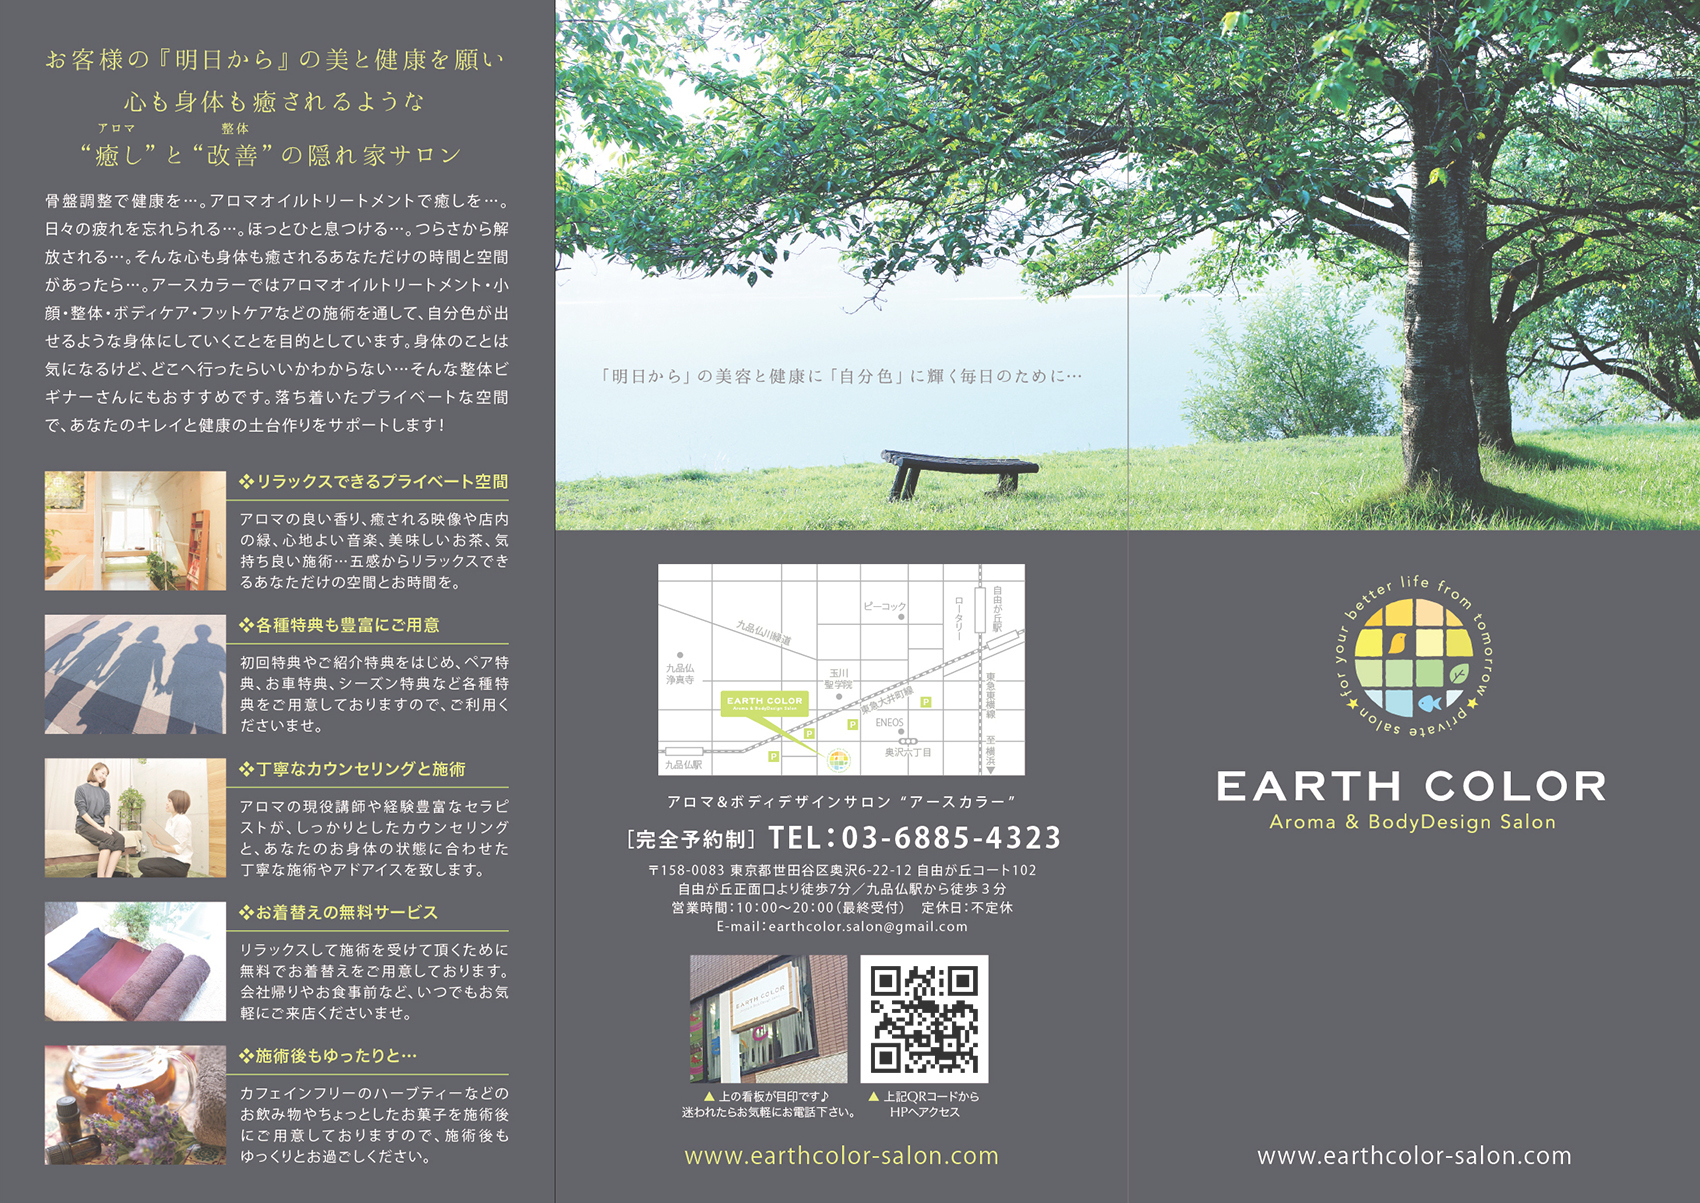 リラクゼーションサロン『EARTH COLOR』様のリーフレット（折りパンフレット）画像